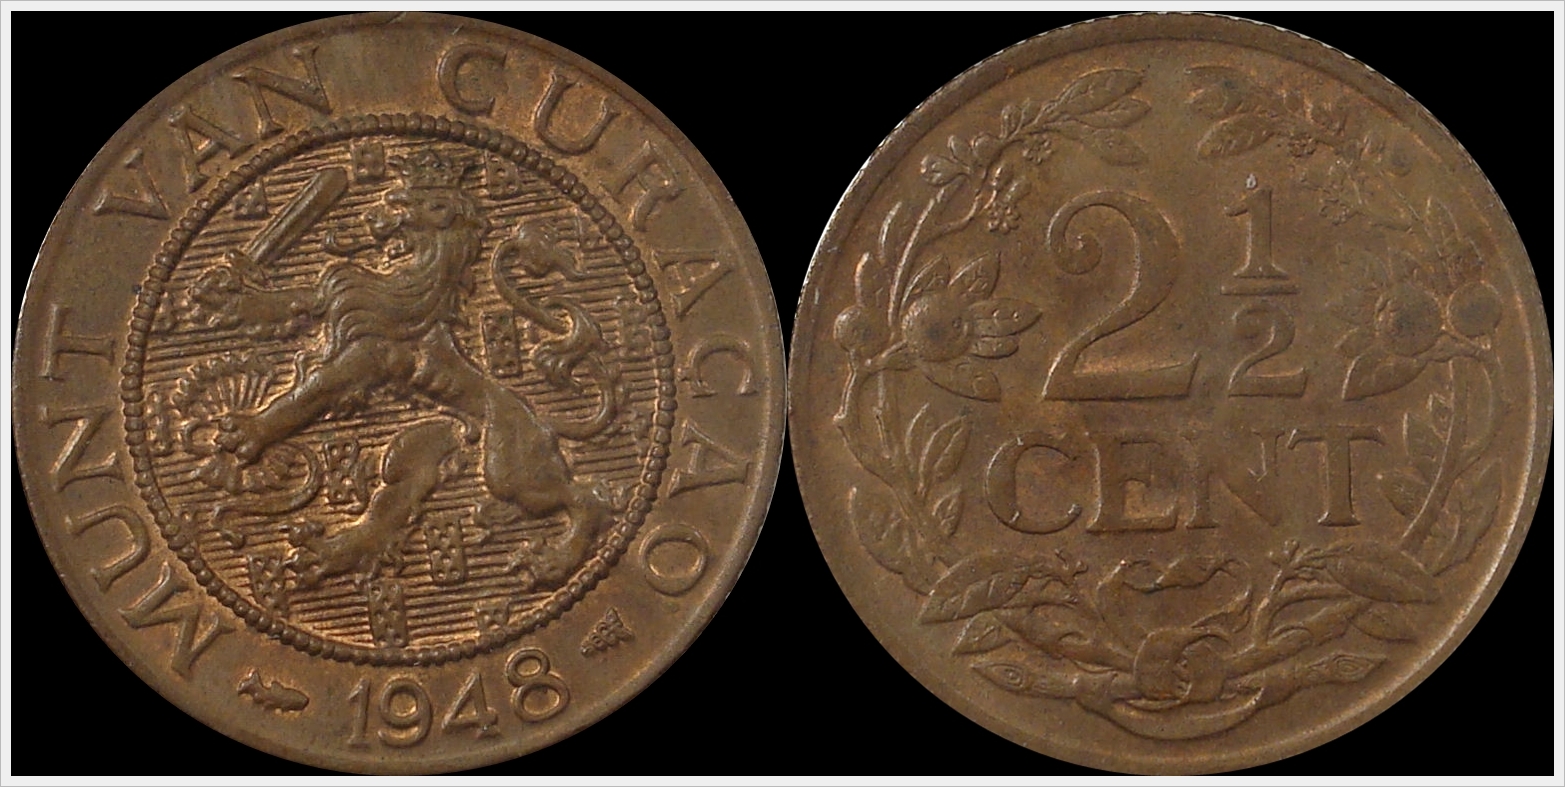 1948 curaco 2 and 1 half cents.jpg